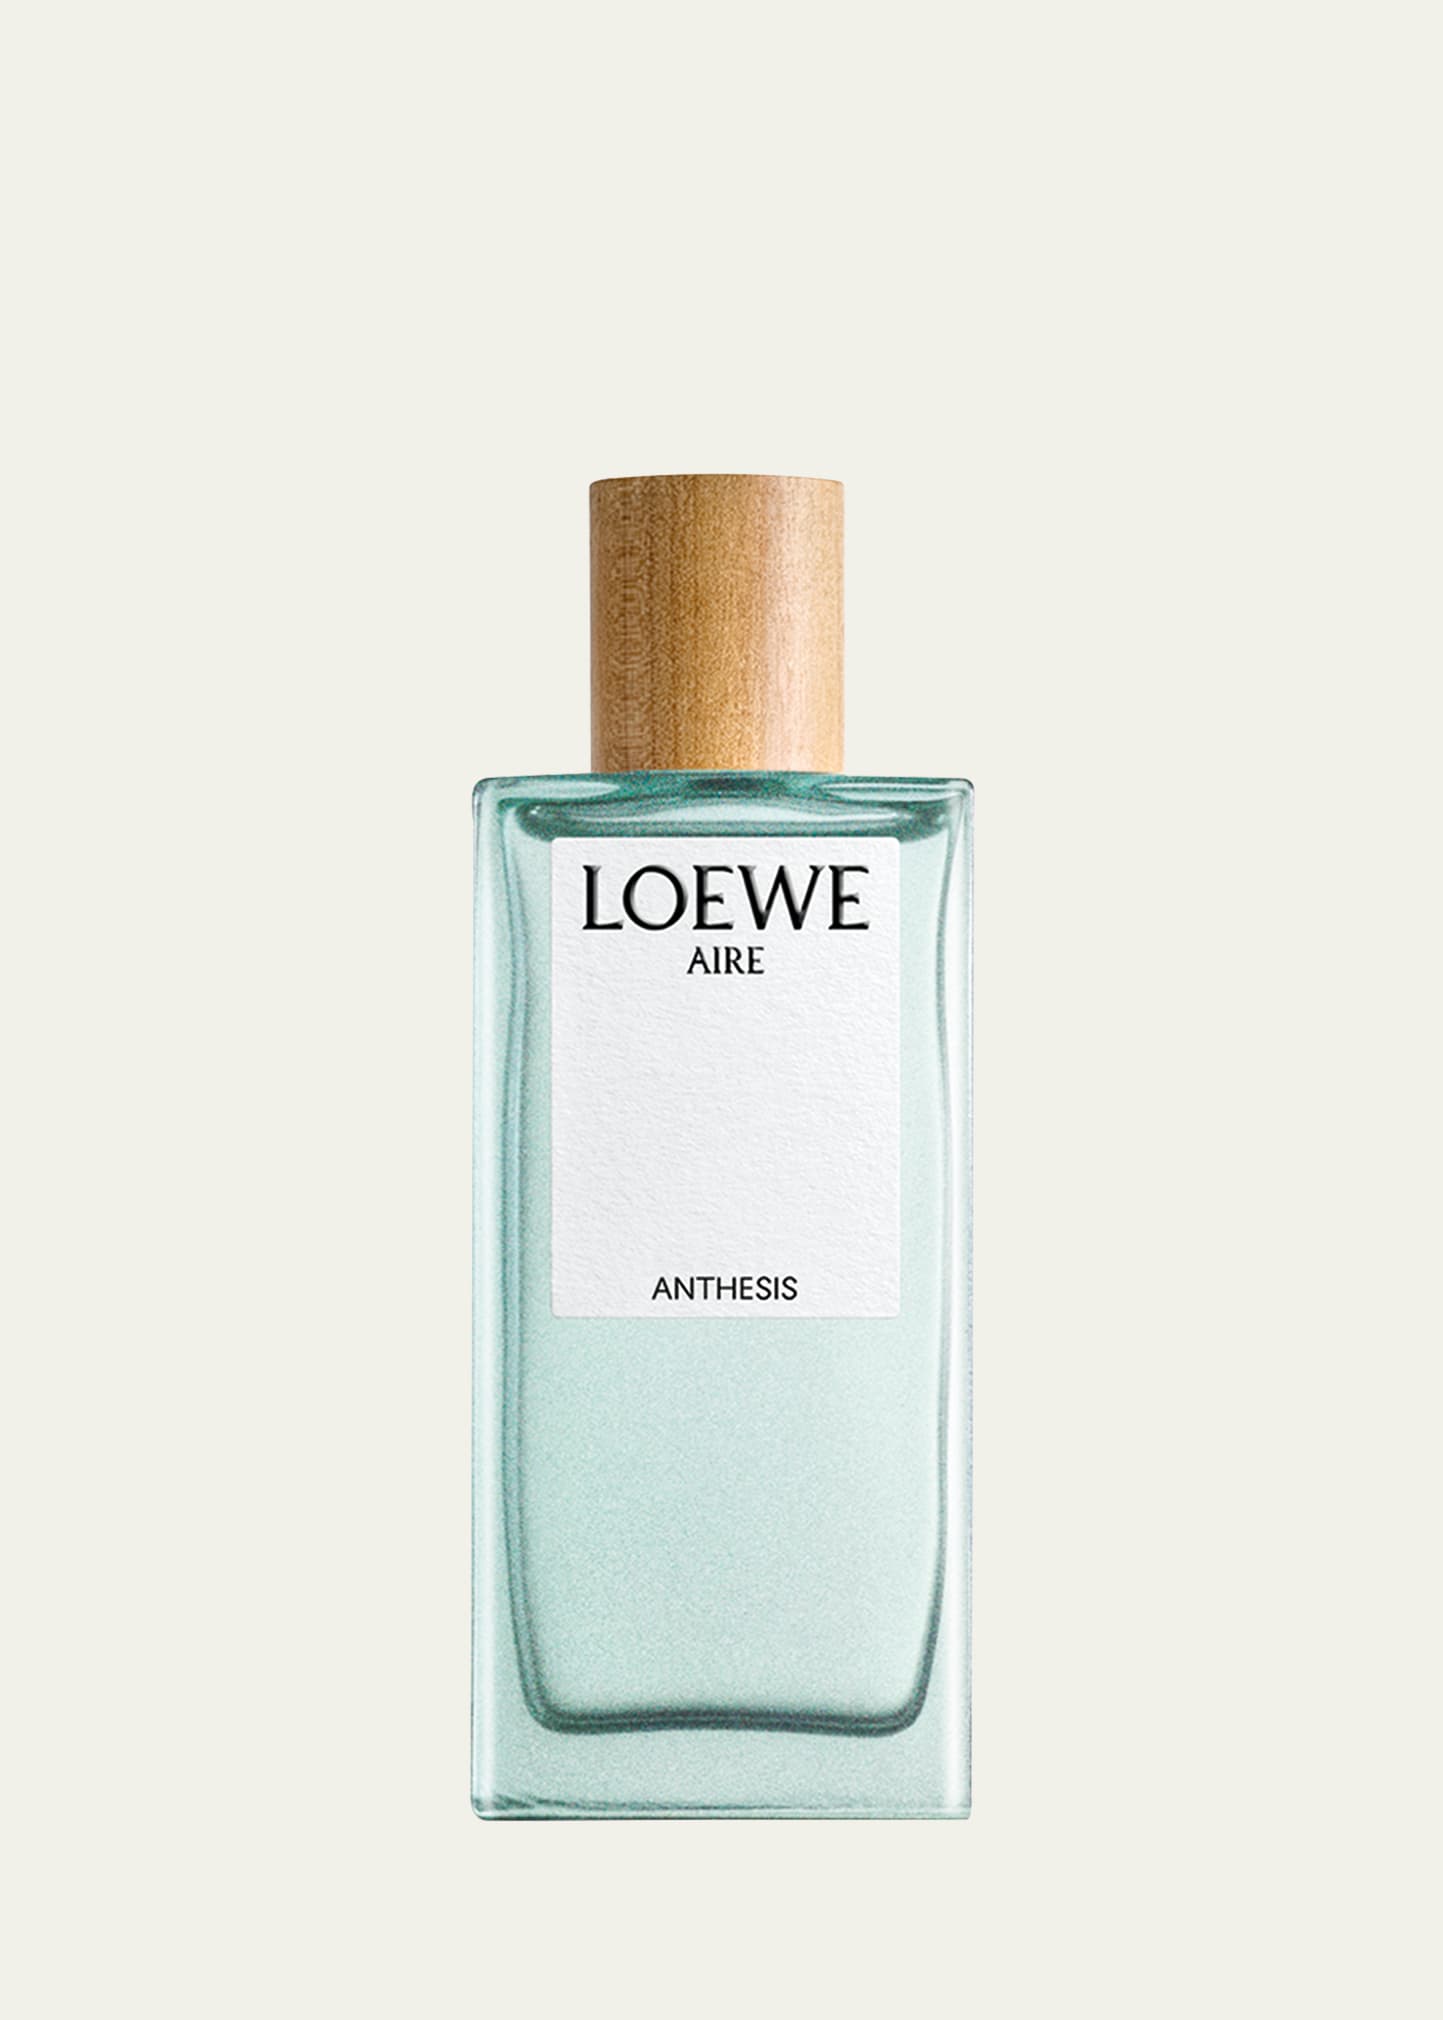 Loewe Aire Anthesis Eau De Parfum, 3.4 Oz.